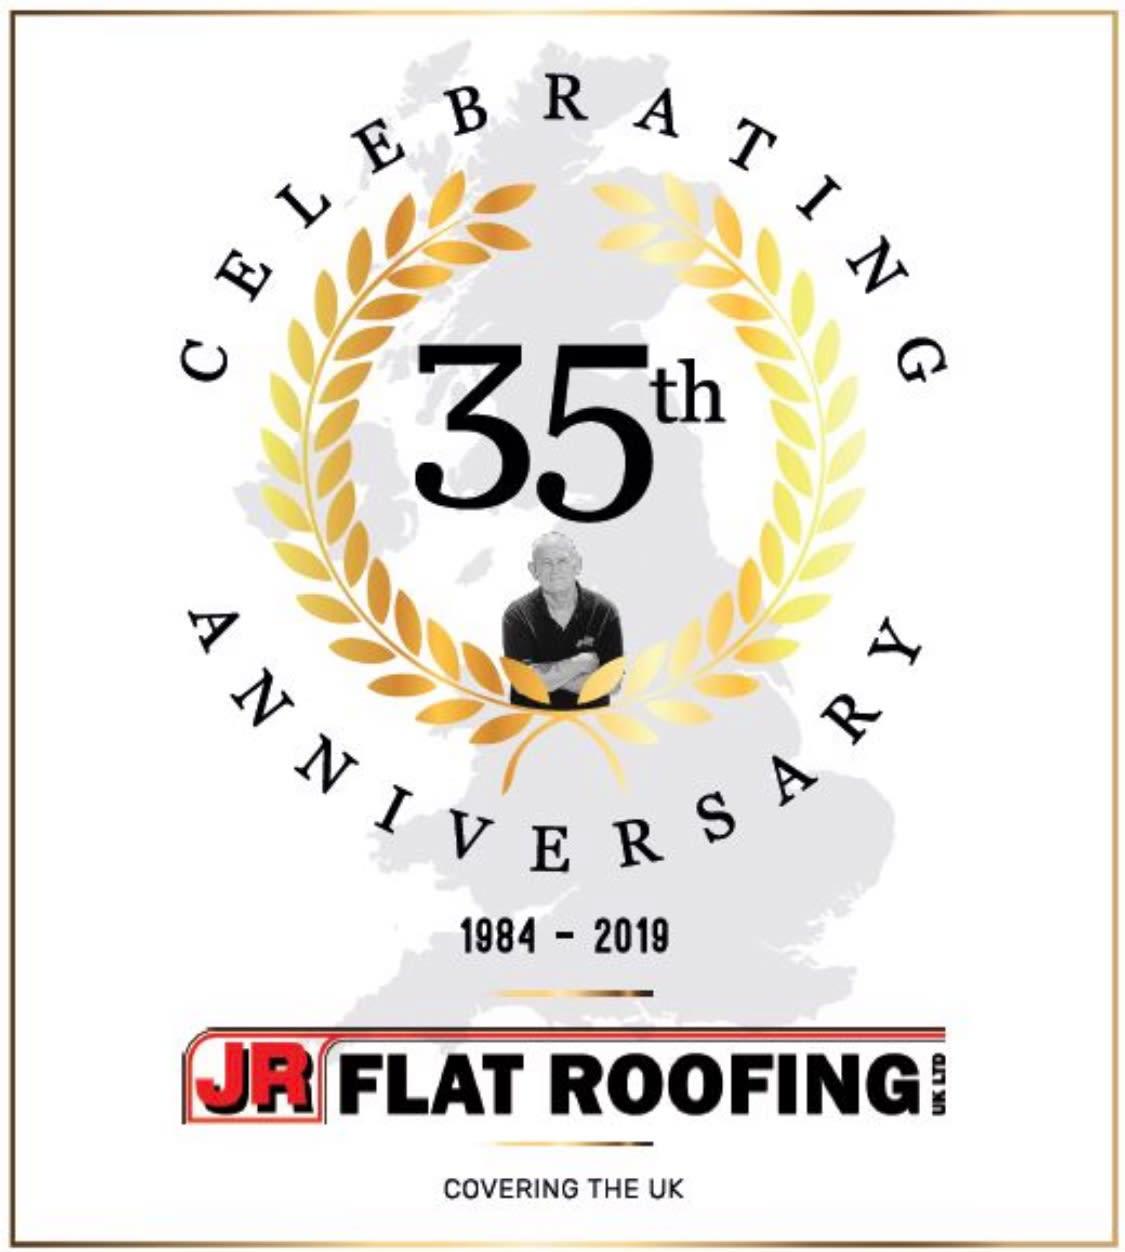 Images J R Flat Roofing UK Ltd